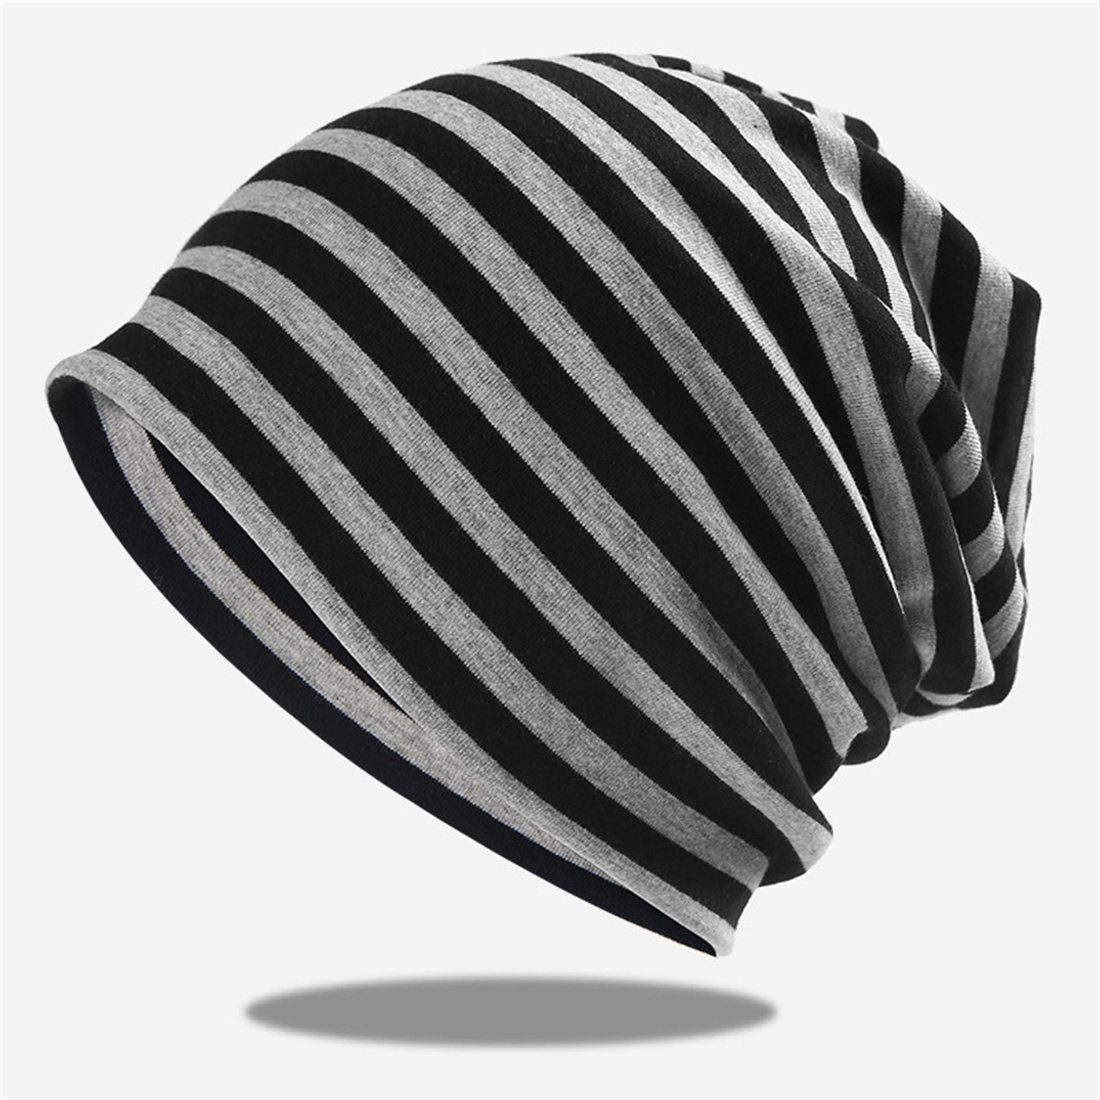 DÖRÖY Strickmütze Gestreifter Pullover Hut, gestrickte Mütze ohne Krempe,Unisex Wrap Hat Schwarz